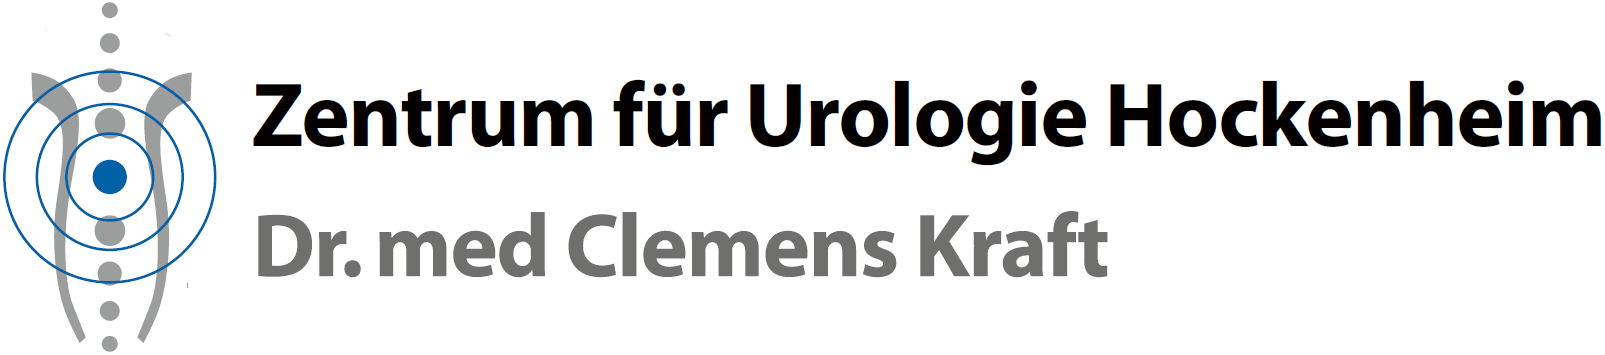 Zentrum für Urologie Hockenheim - Dr. Clemens Kraft